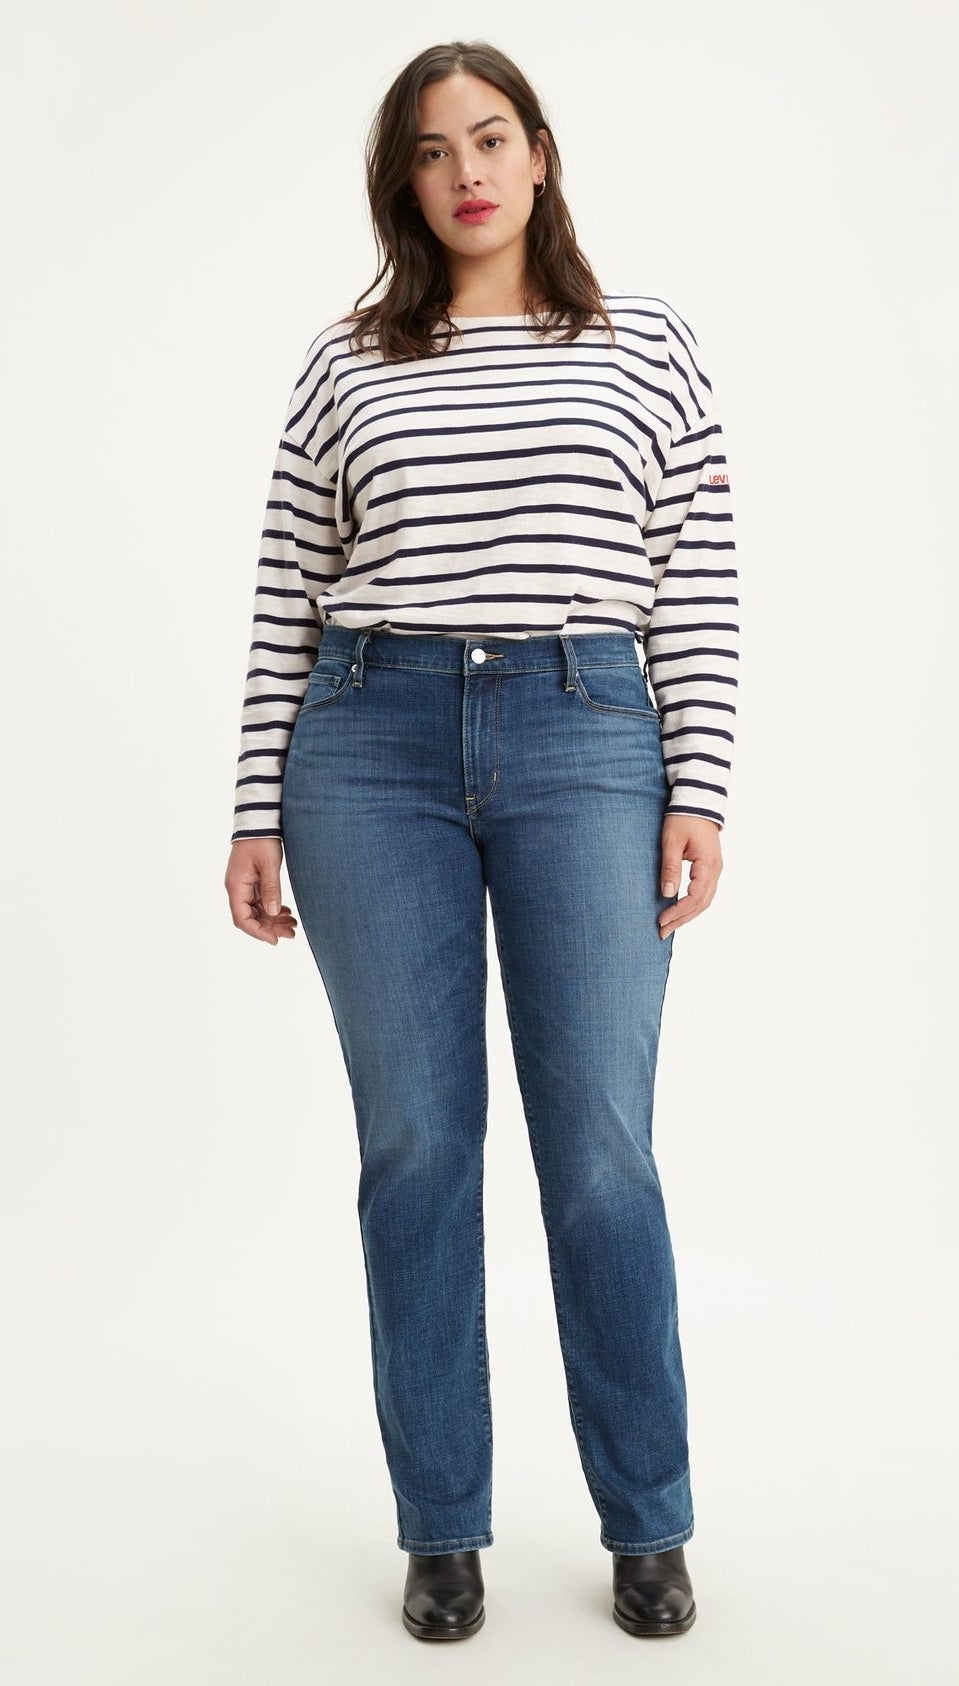 model wearing straight leg blue jeans